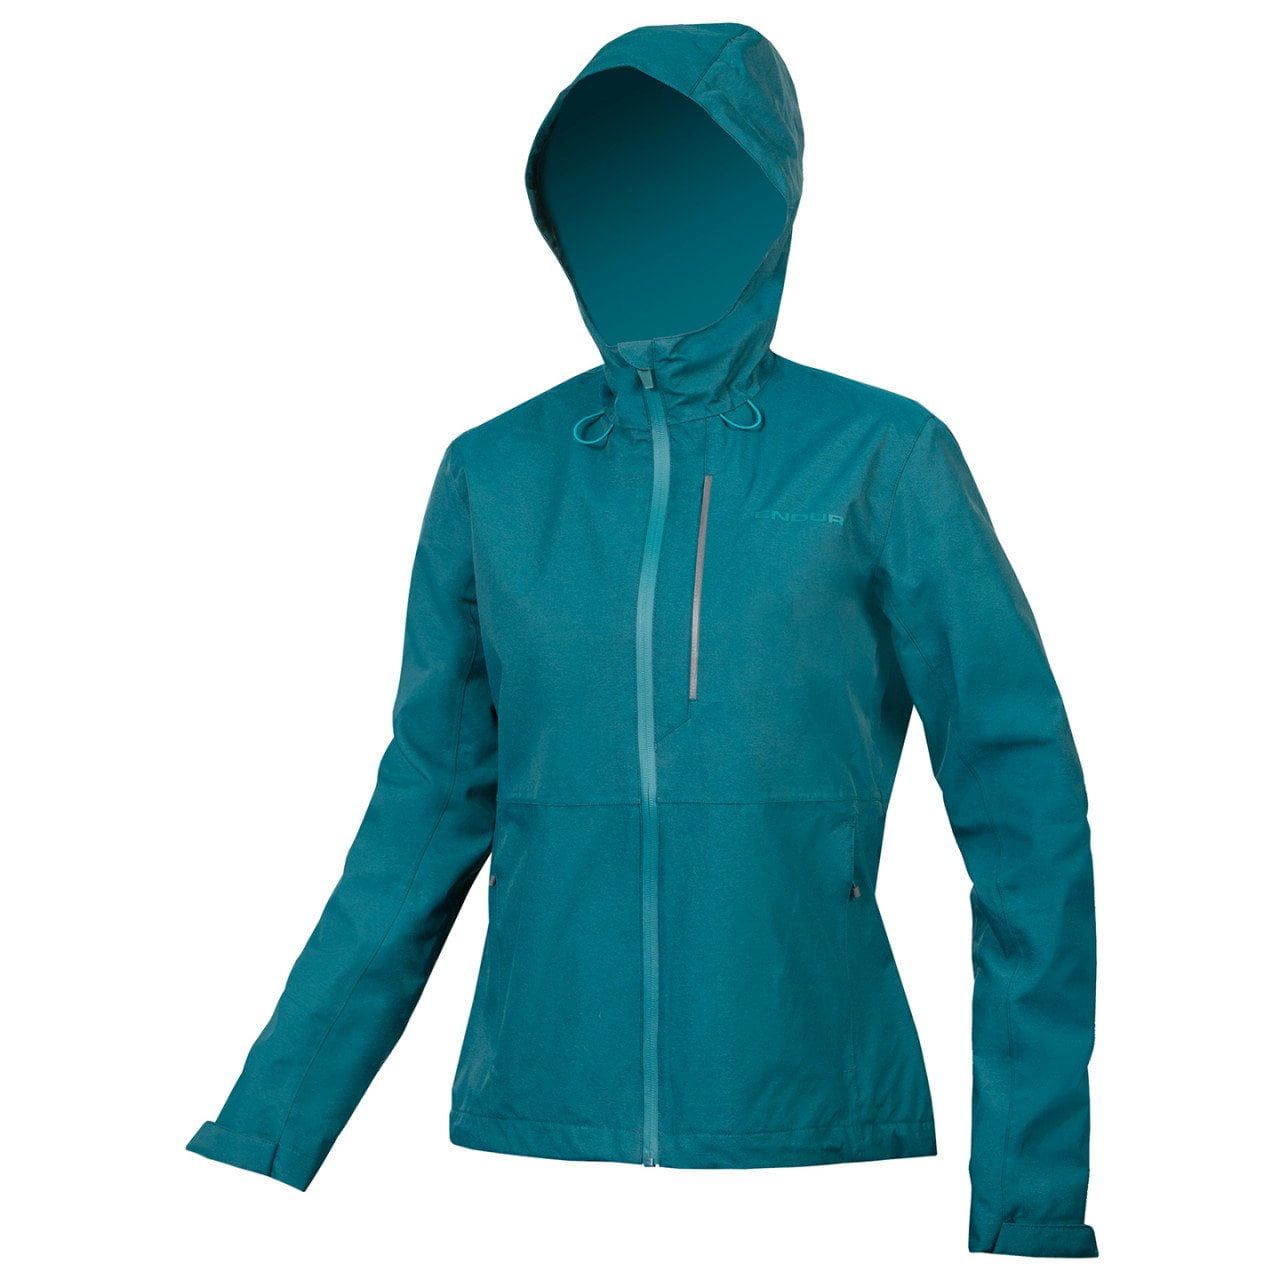 Hummvee Women's Hooded Waterproof Jacket